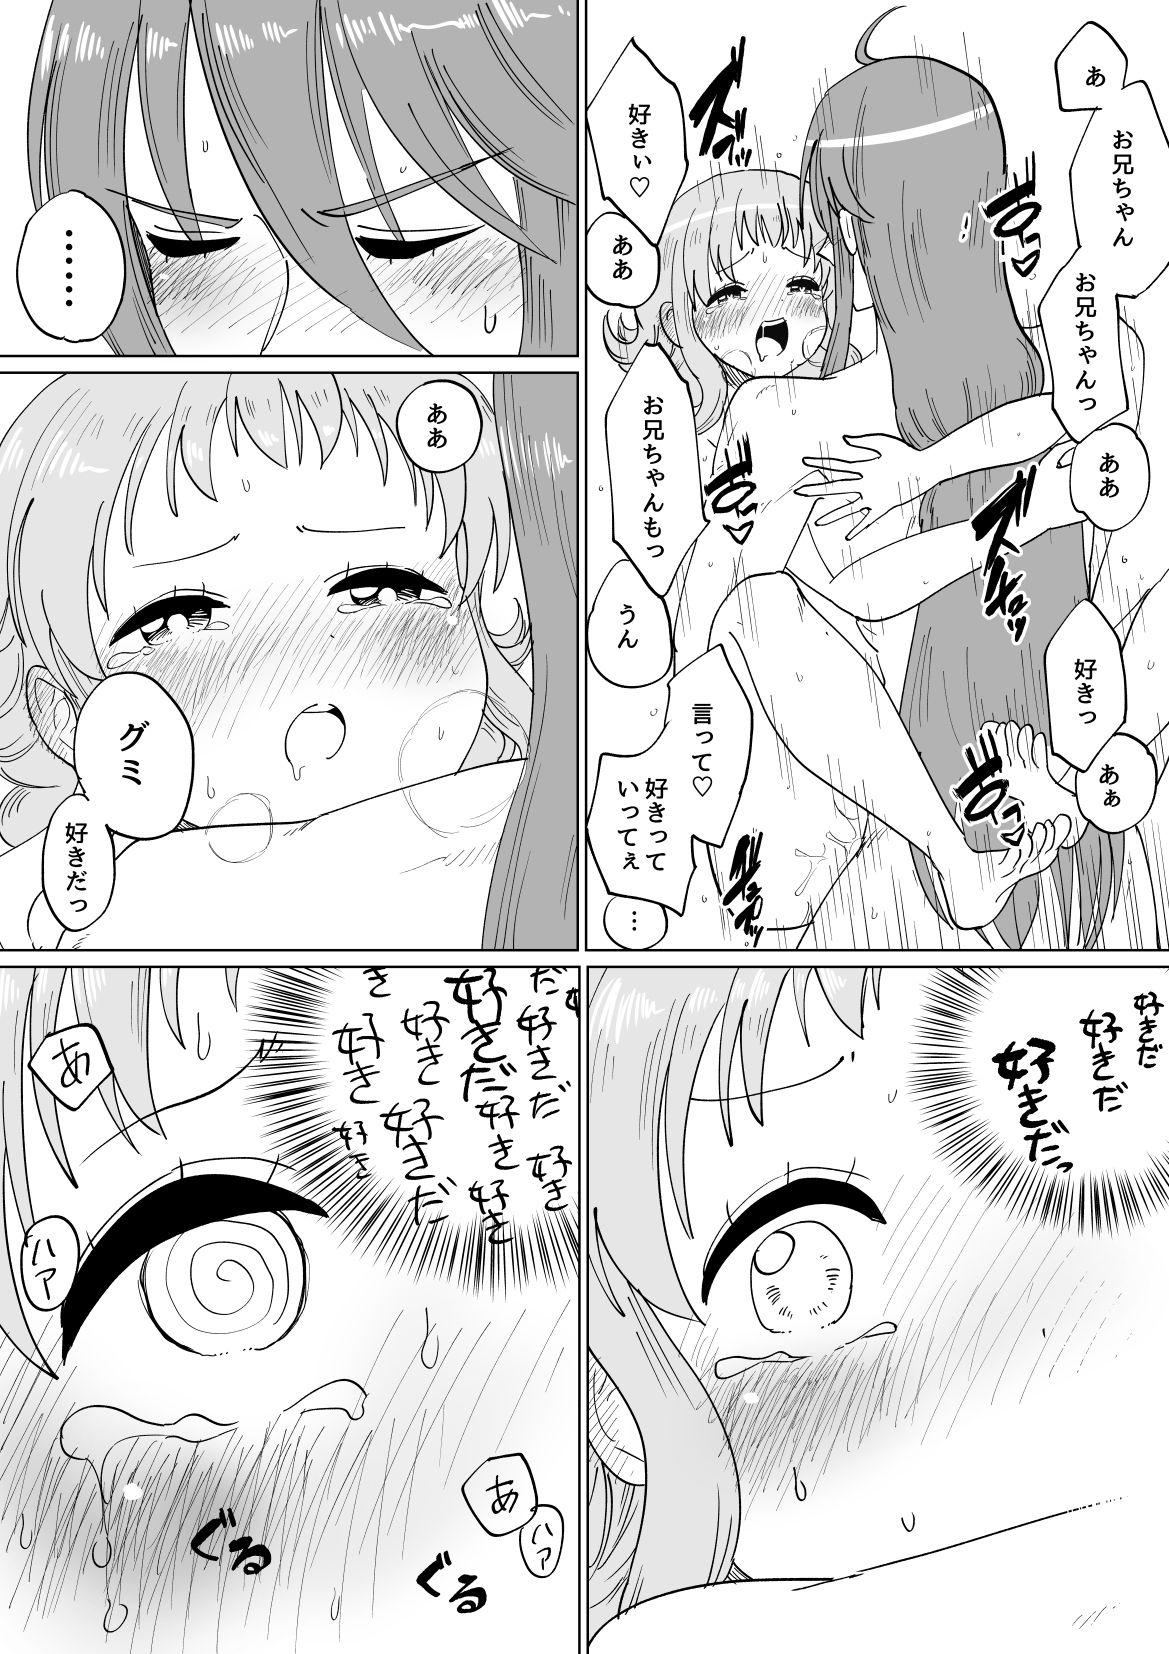 Gaku Gumi Vocaloid Manga R Special 30